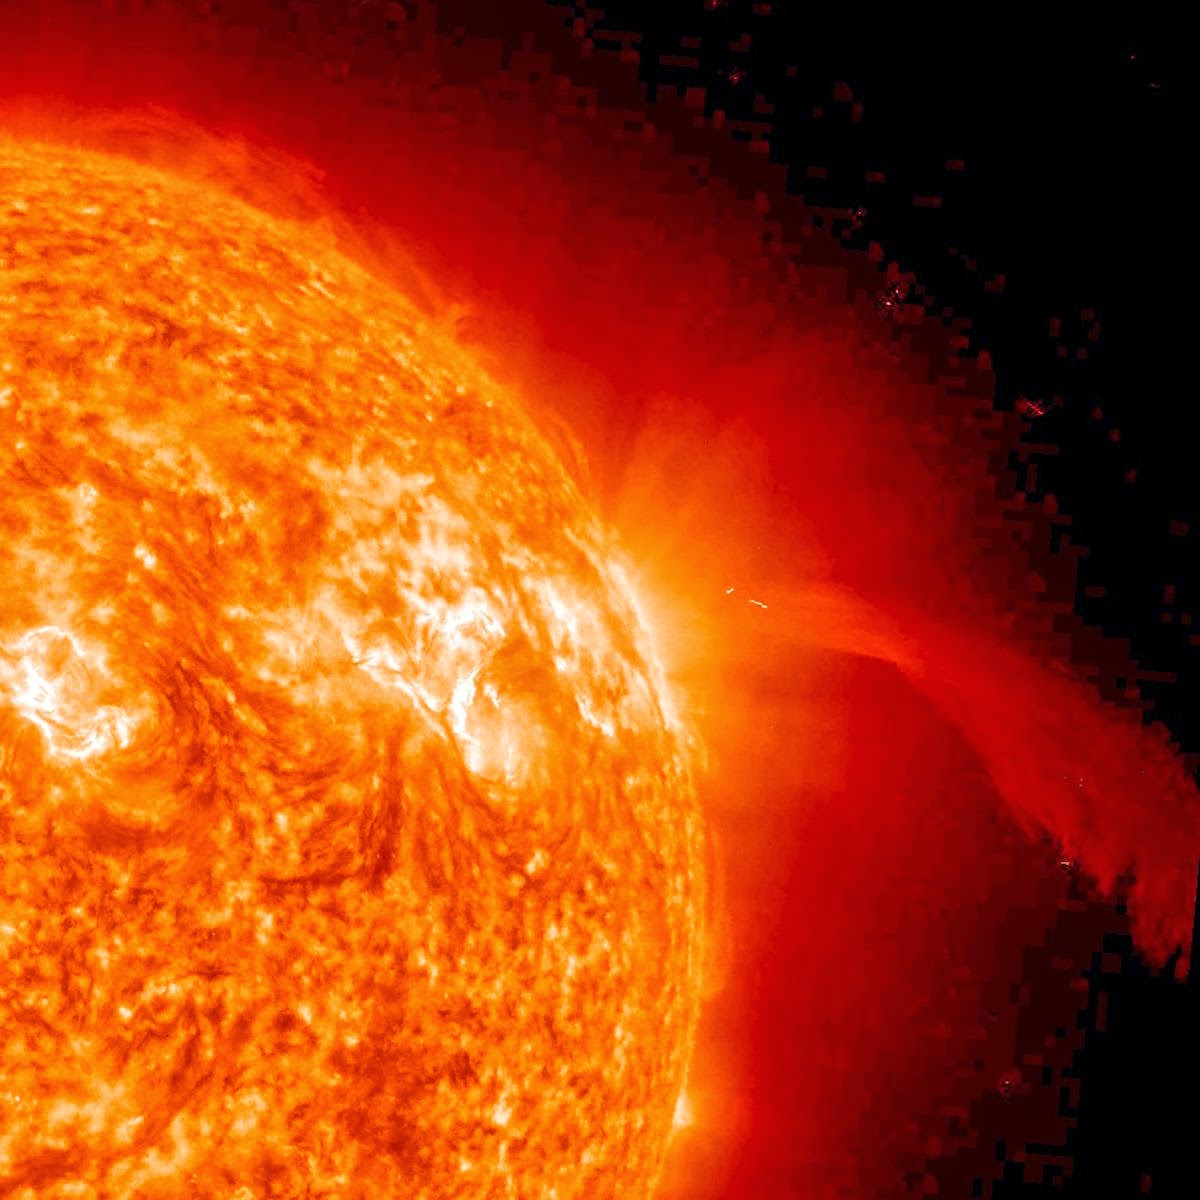 
Δείτε το φαντασμαγορικό βίντεο που δημοσιοποίησε η NASA από την επιφάνεια του ήλιου
